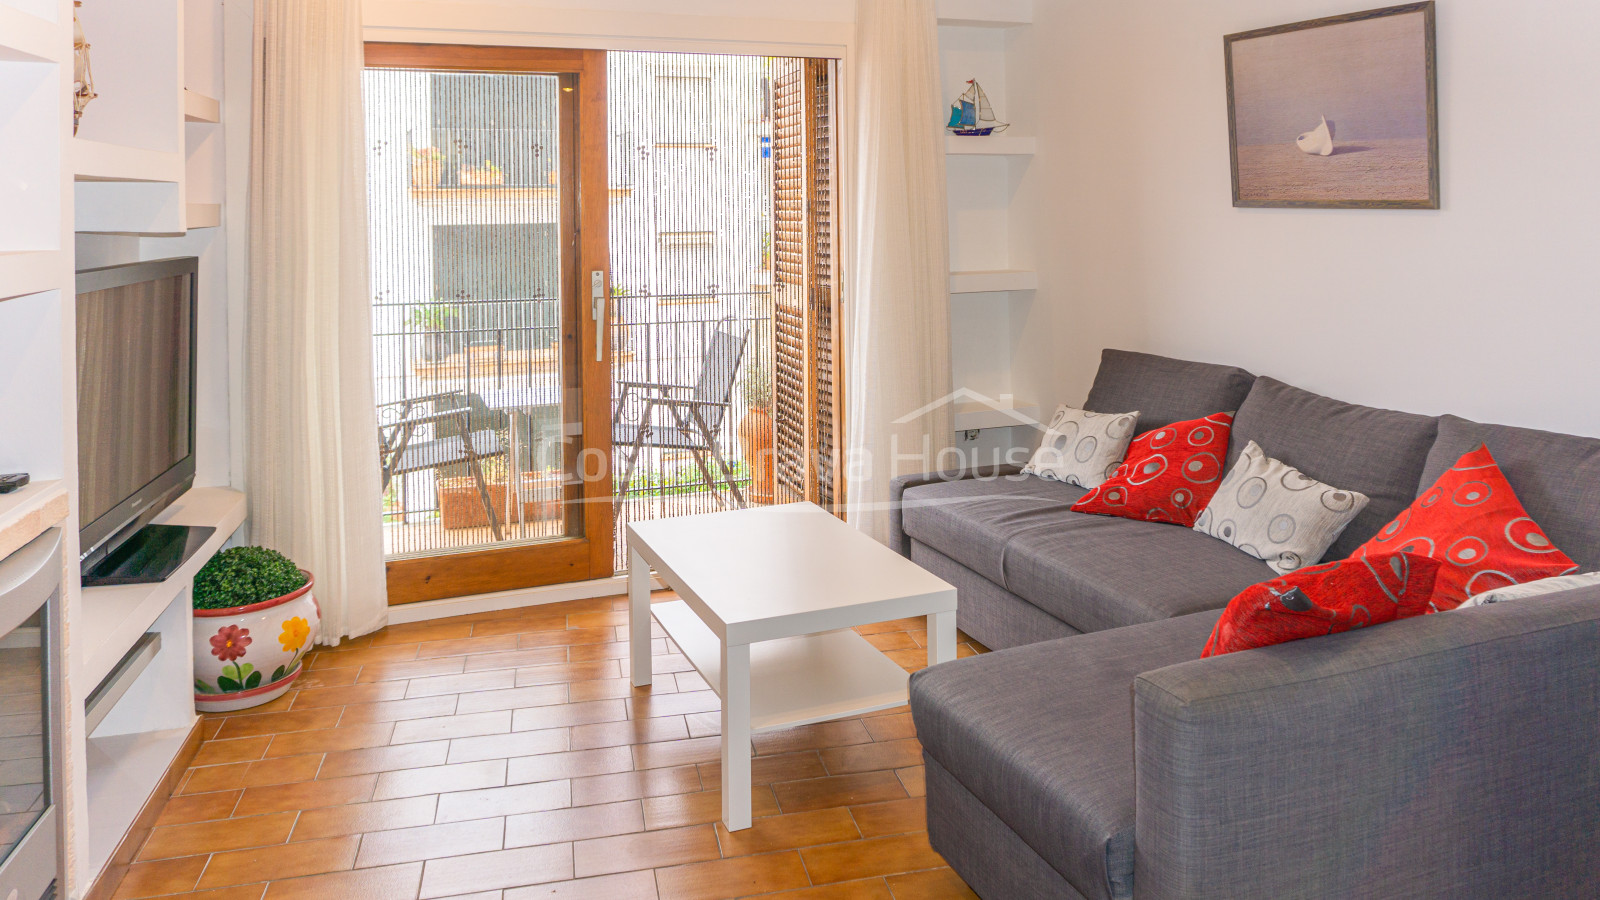 Apartamento en perfecto estado en venta en pleno centro de Calella, a dos minutos a pie de la playa